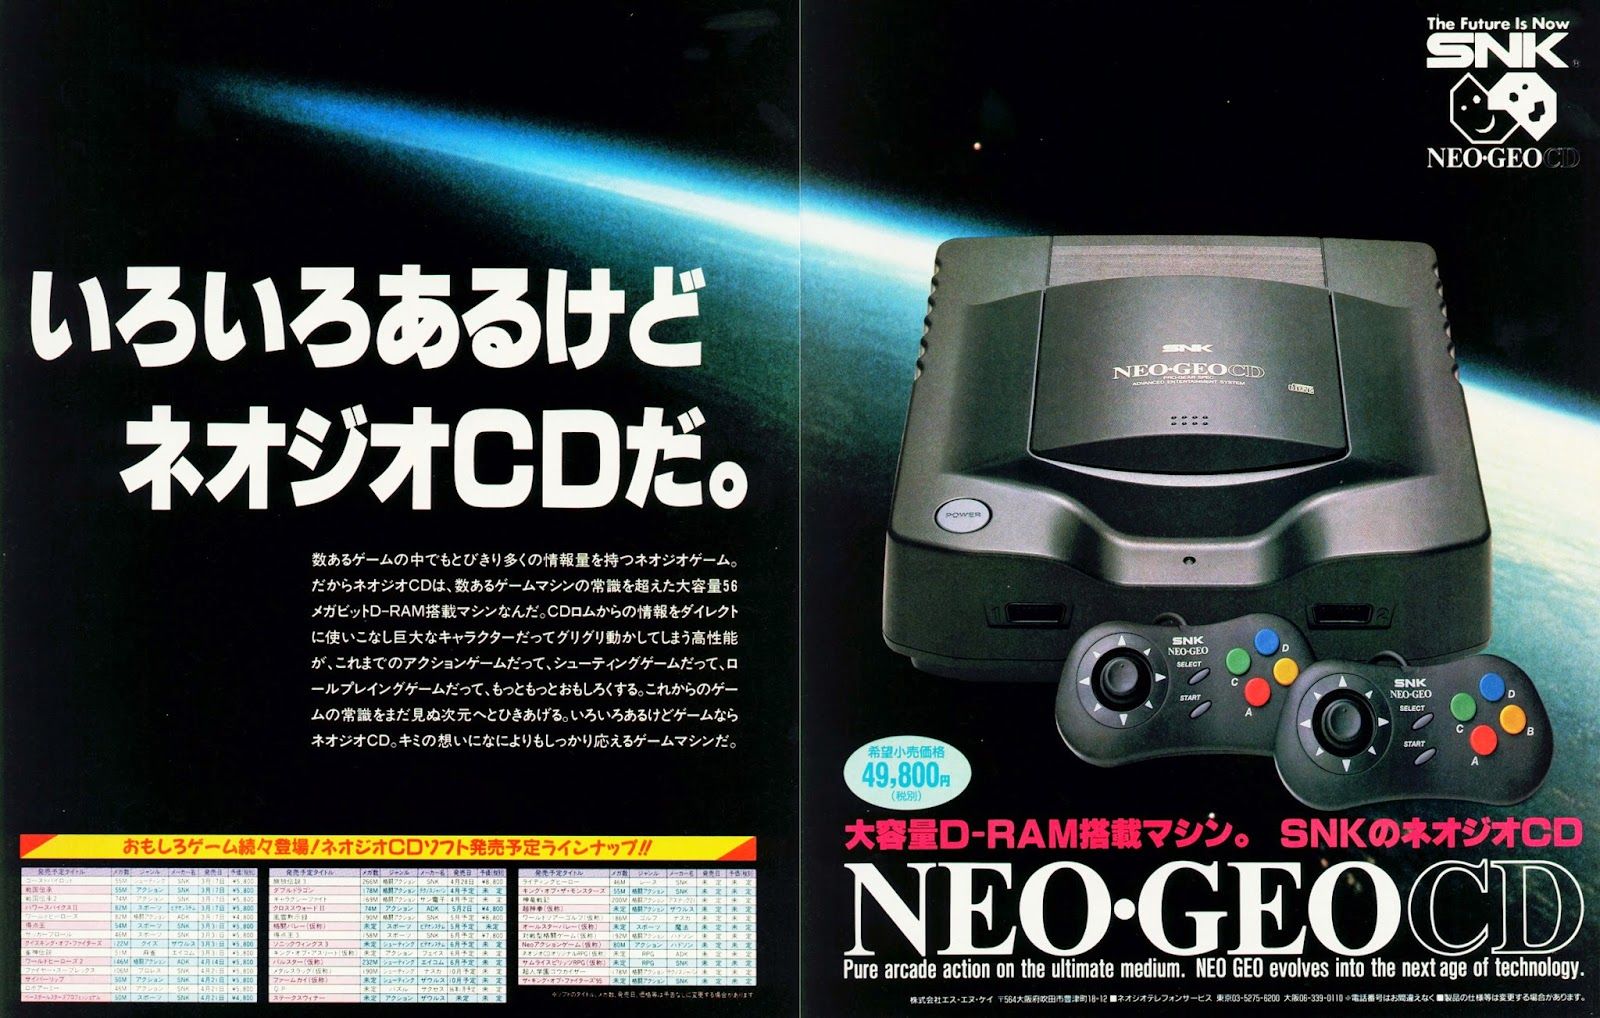 Neo Geo CD